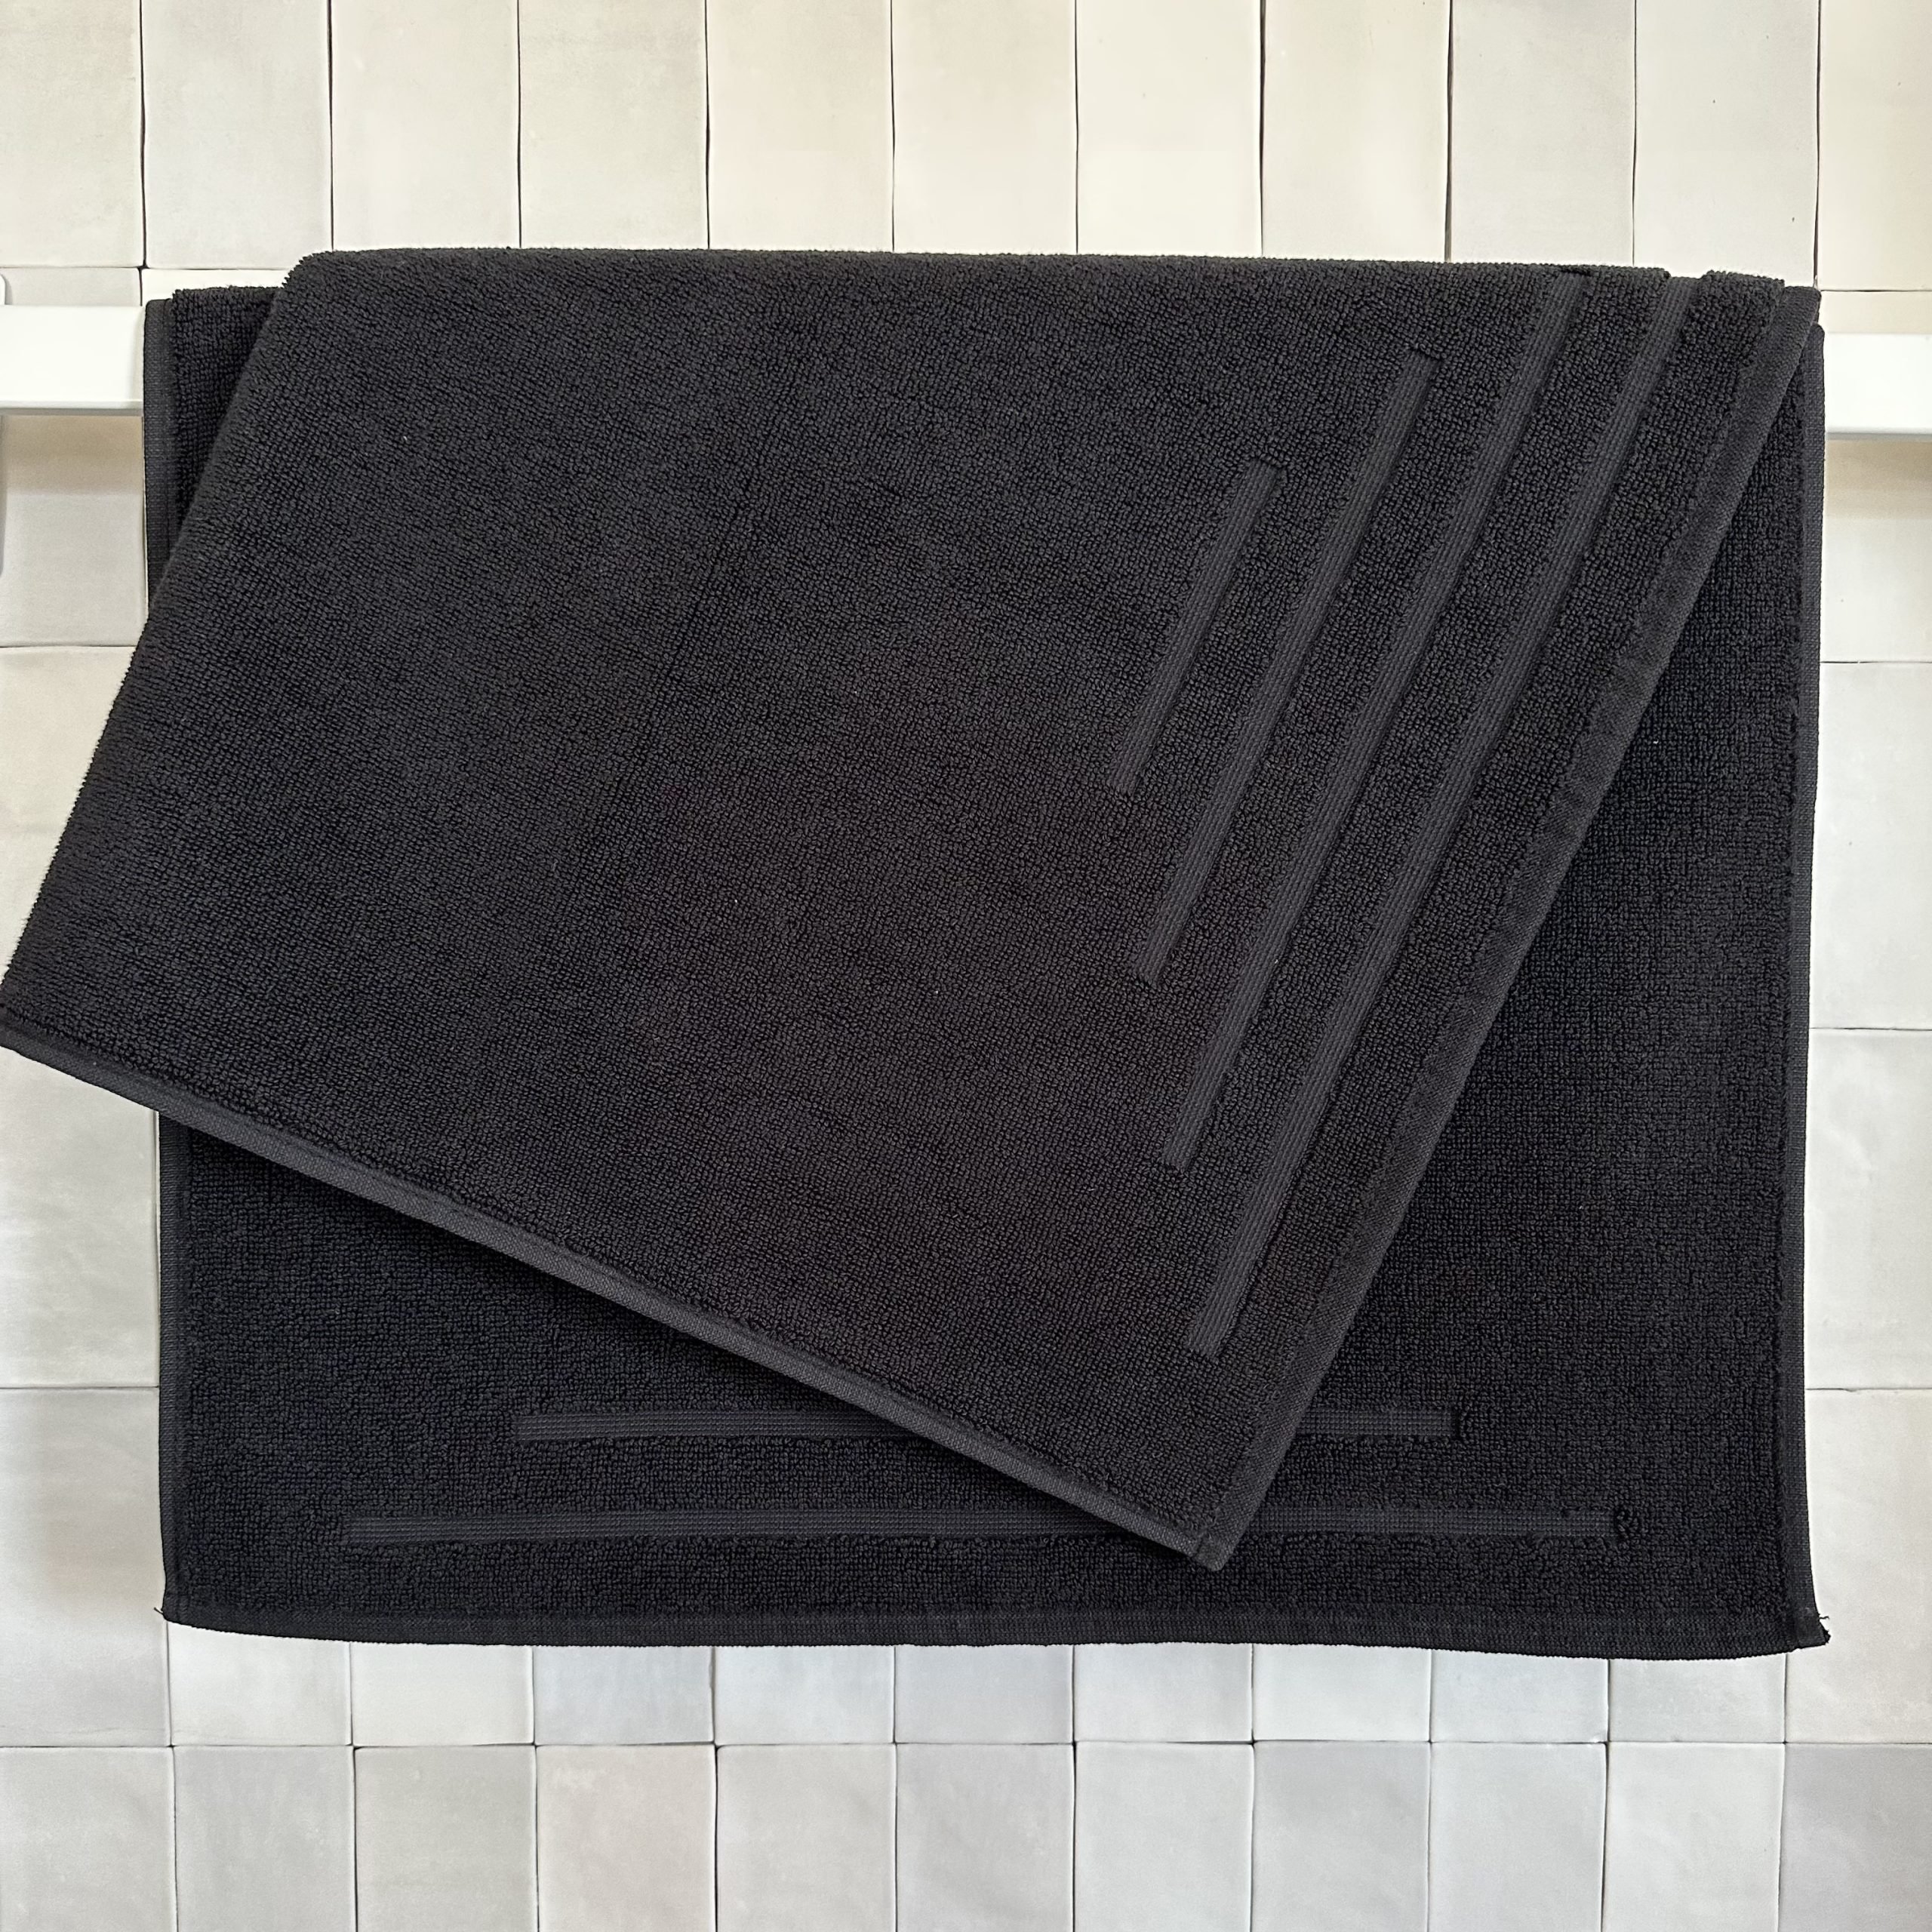 Set de 4 toallas de baño diseño Ola, 100% algodón, 600 gr. - Tienda Hohos